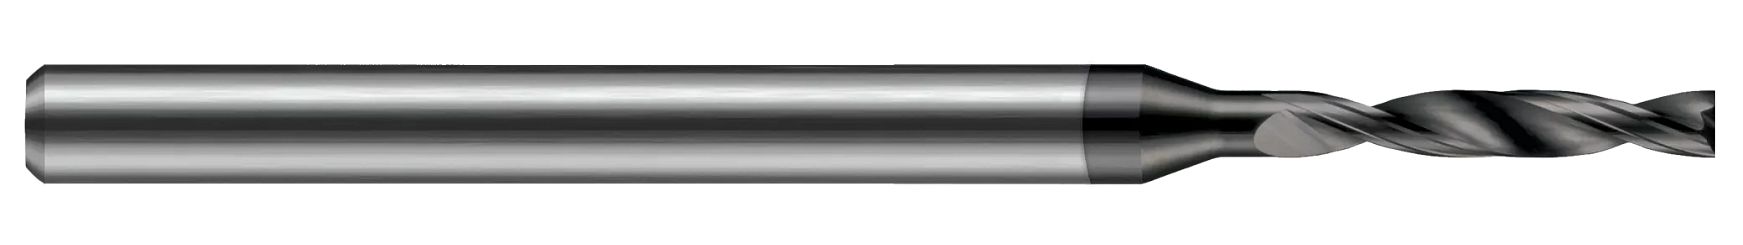 Miniature High Performance Drills-Flat Bottom Drill-Metric